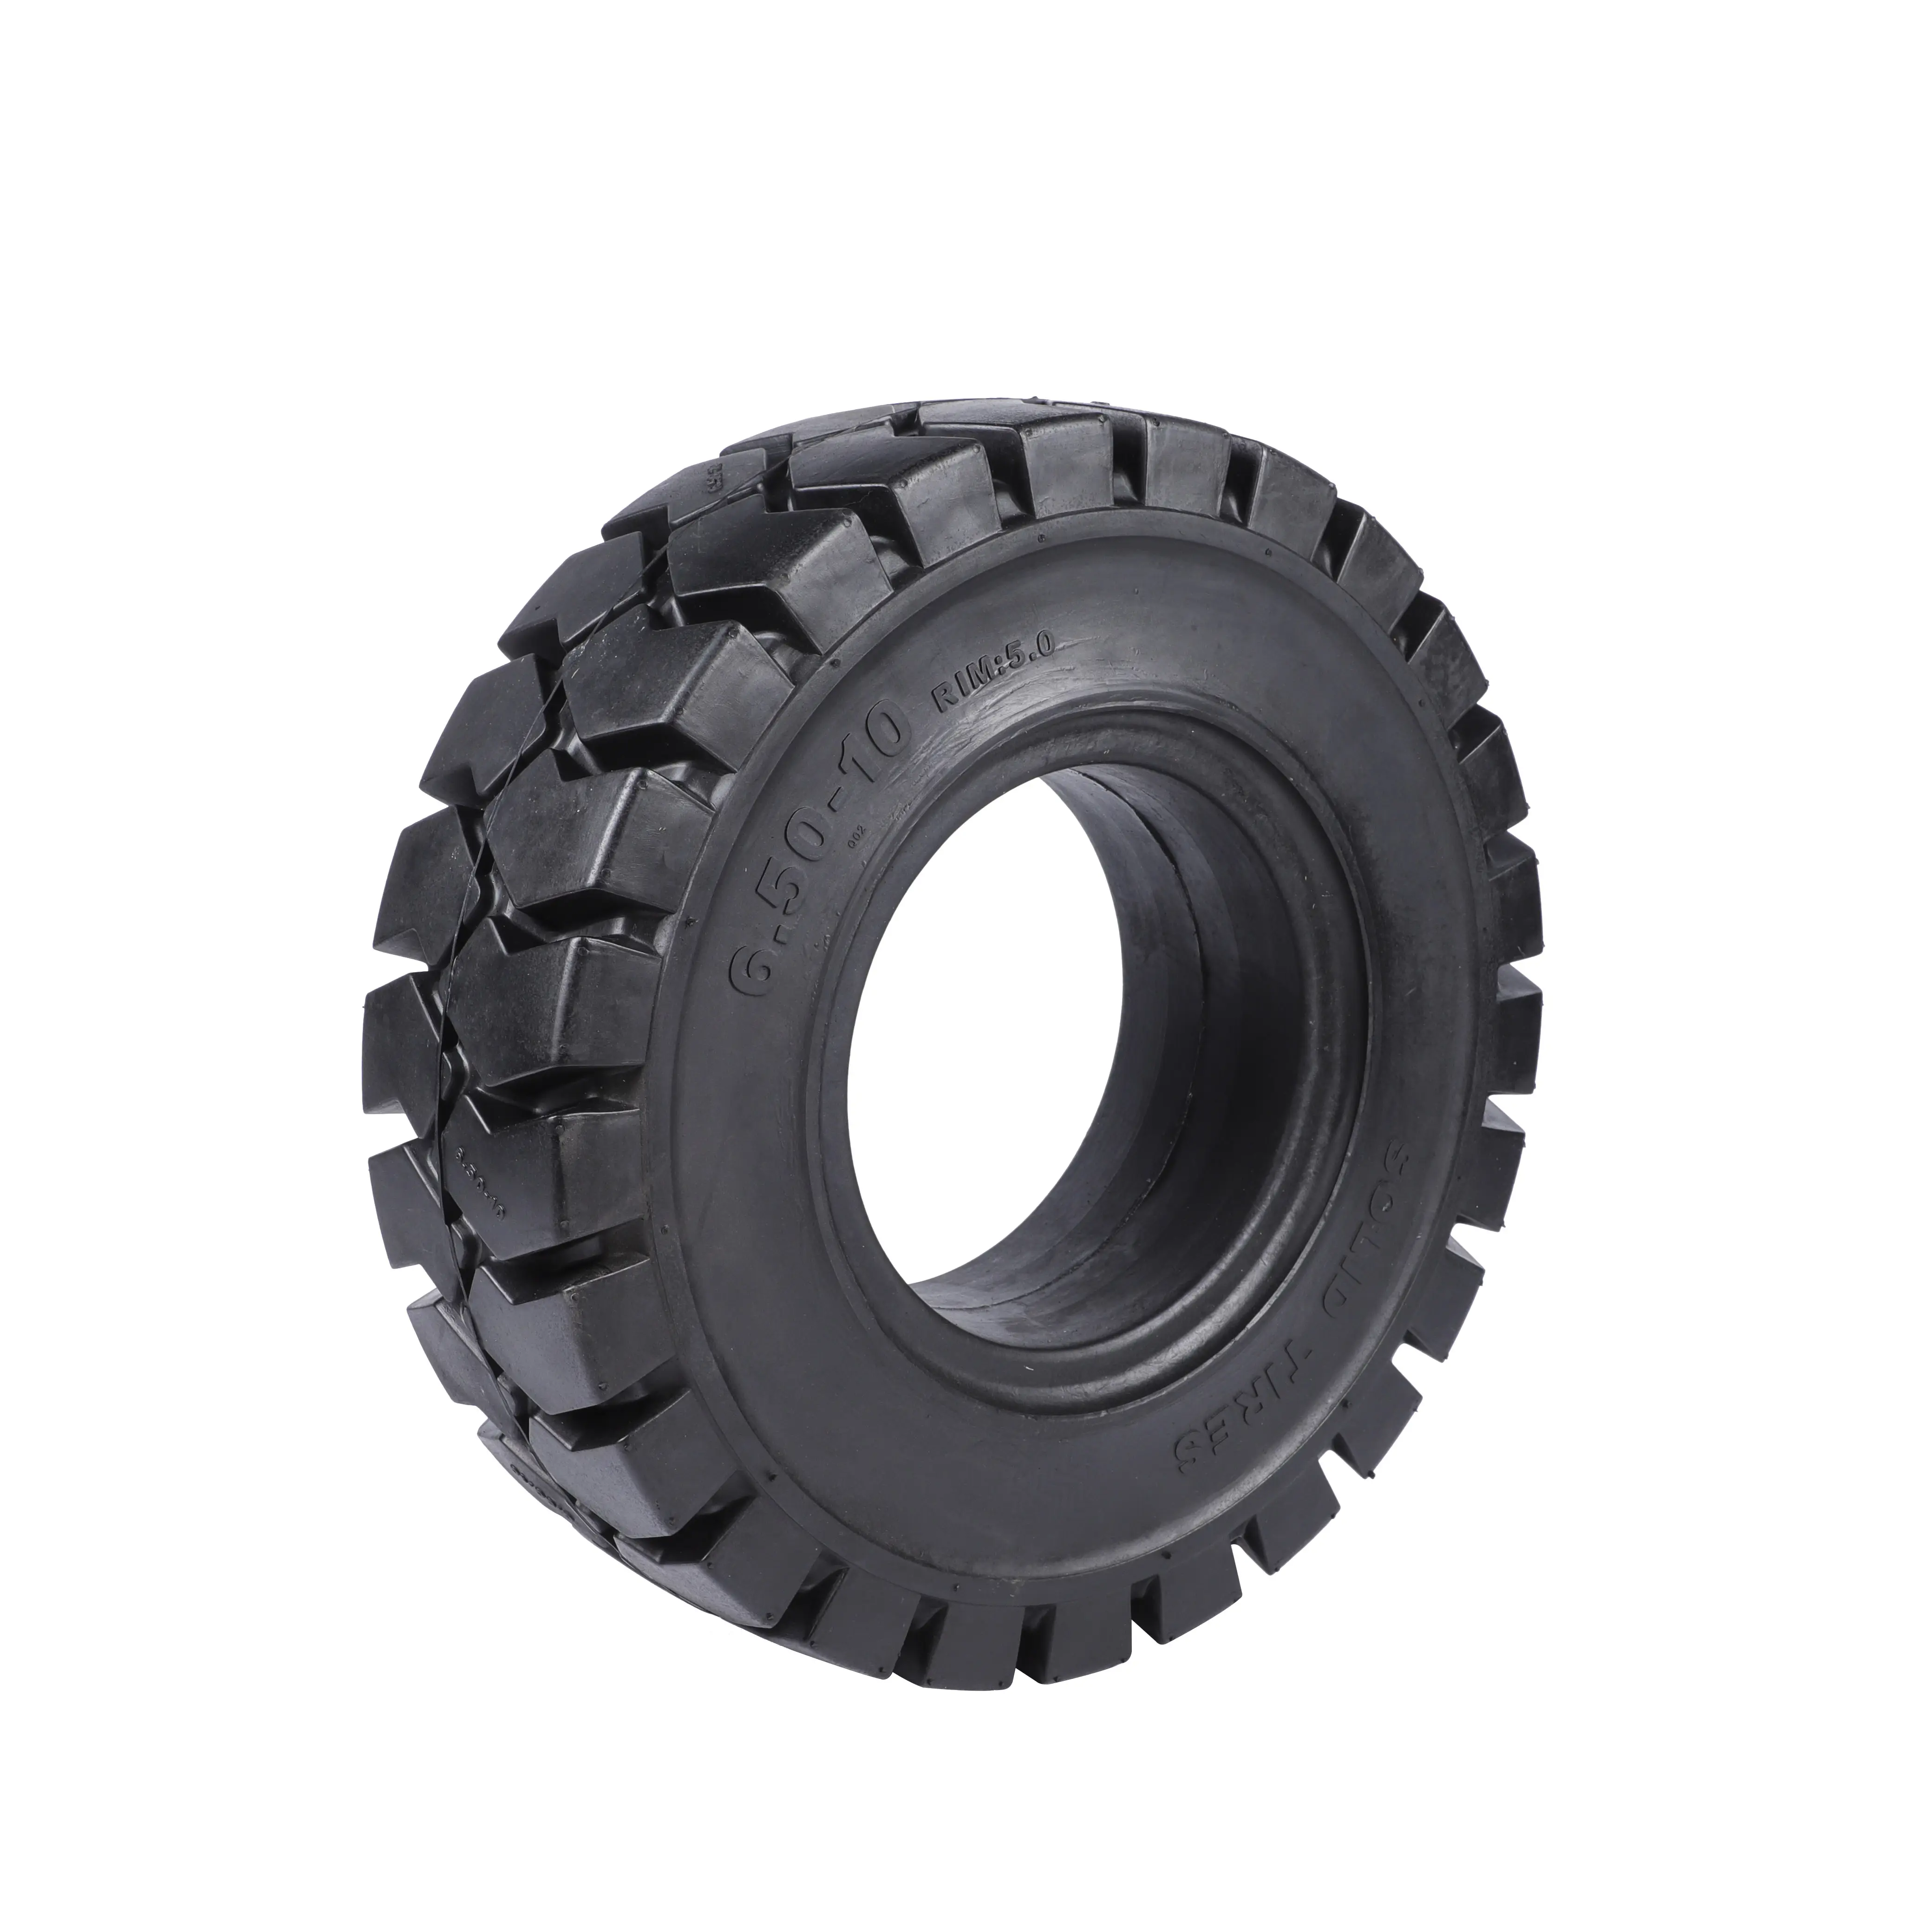 Sin marca disponible Carretilla elevadora Fabricante de neumáticos sólidos Proveedor de neumáticos sólidos Neumáticos sólidos de diferentes tamaños